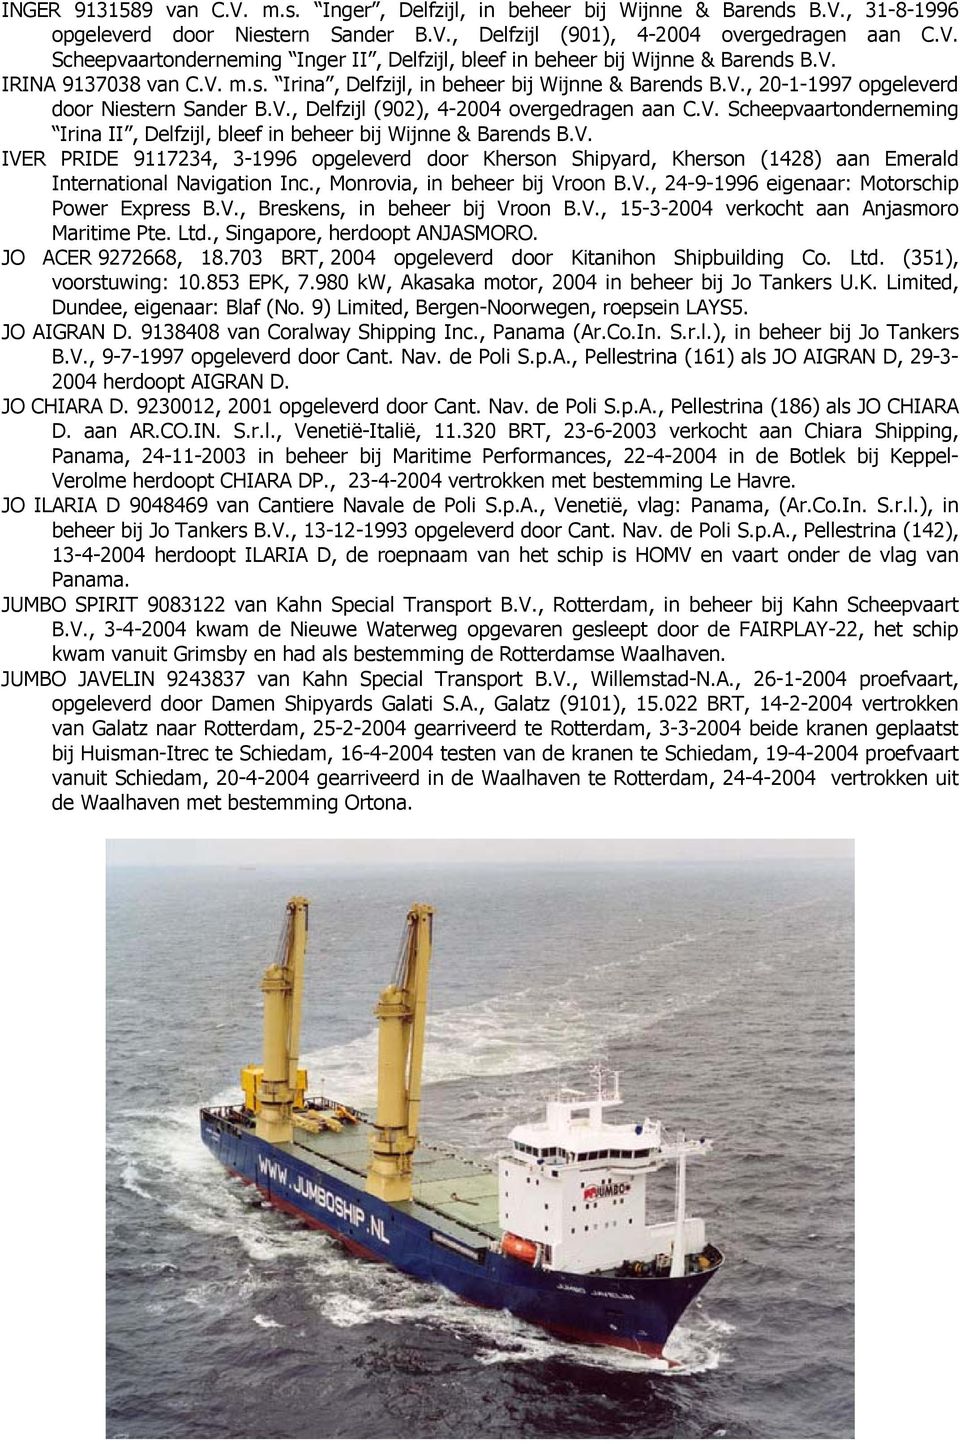 V. IVER PRIDE 9117234, 3-1996 opgeleverd door Kherson Shipyard, Kherson (1428) aan Emerald International Navigation Inc., Monrovia, in beheer bij Vroon B.V., 24-9-1996 eigenaar: Motorschip Power Express B.